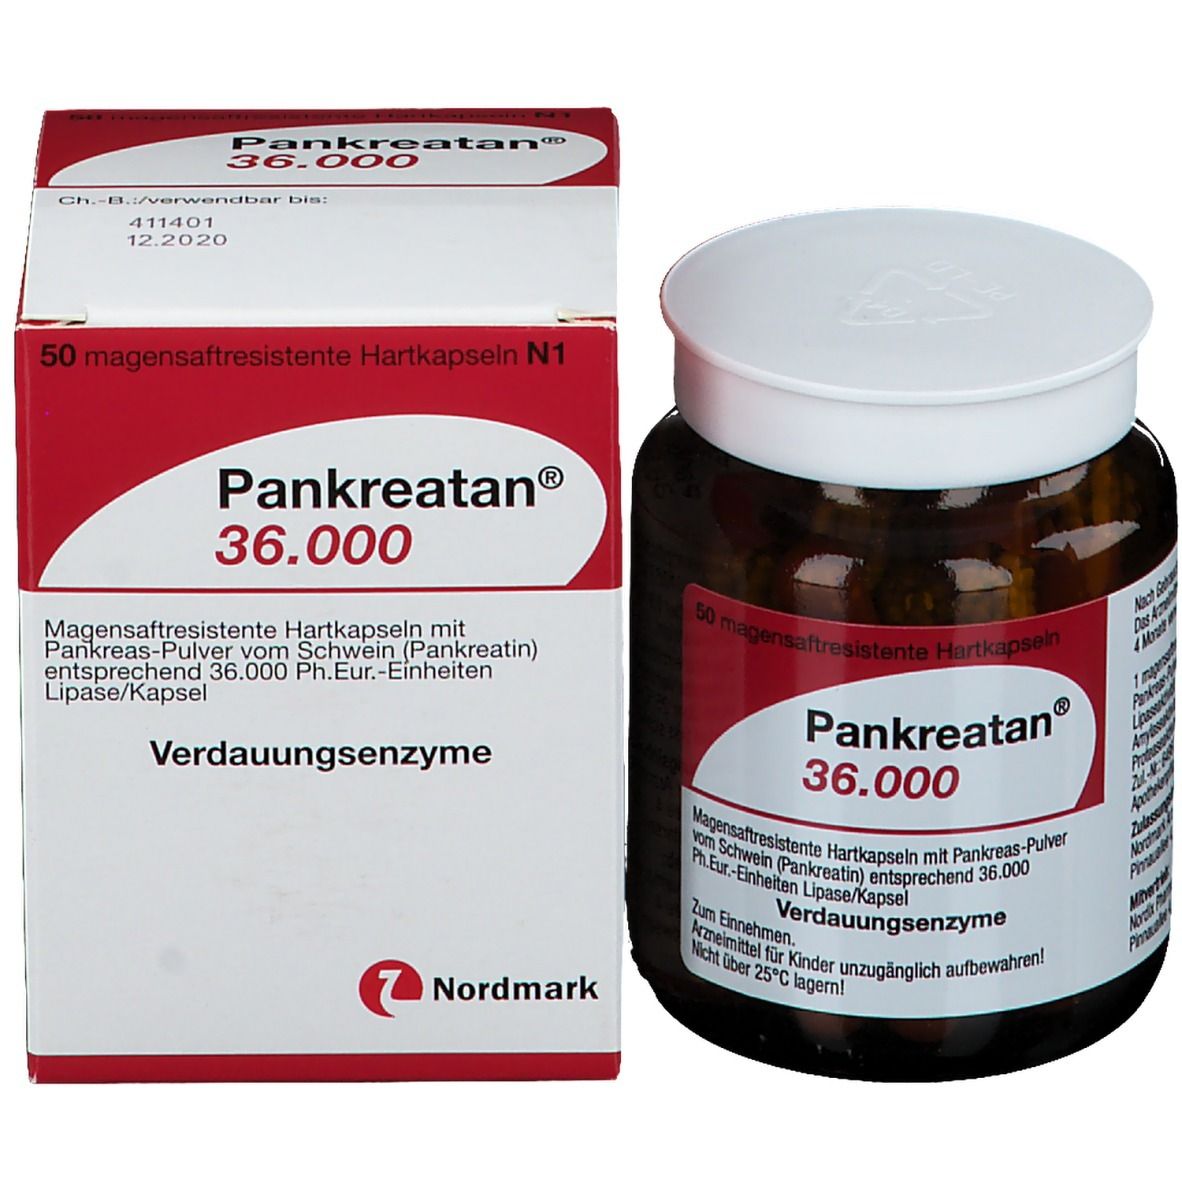 Pankreatan® 36.000